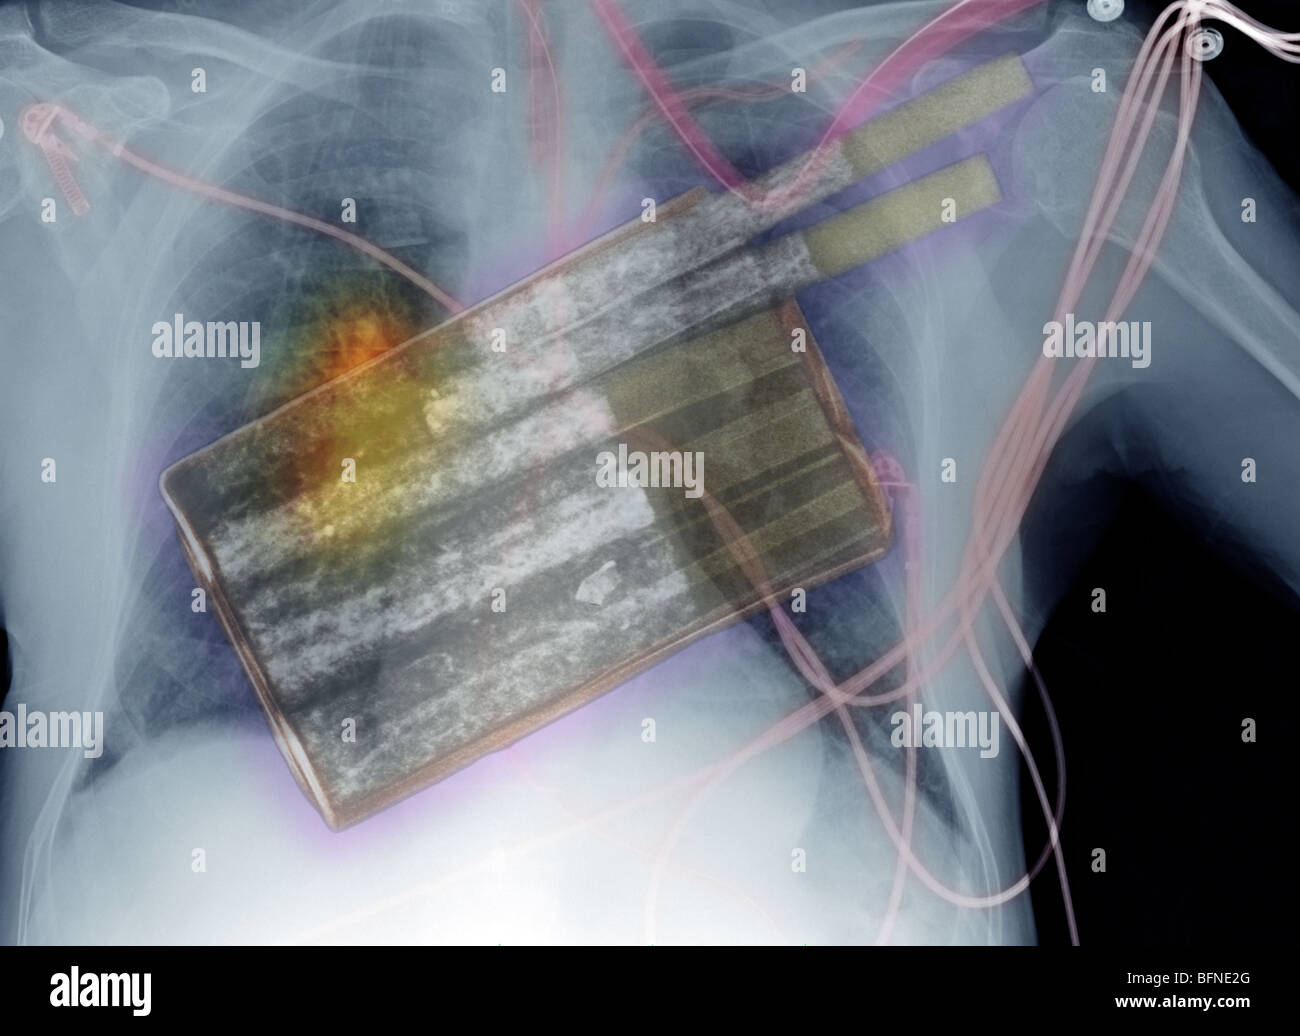 Les cigarettes, la principale cause de cancer du poumon, en surimpression sur une radiographie montrant le cancer du poumon Banque D'Images